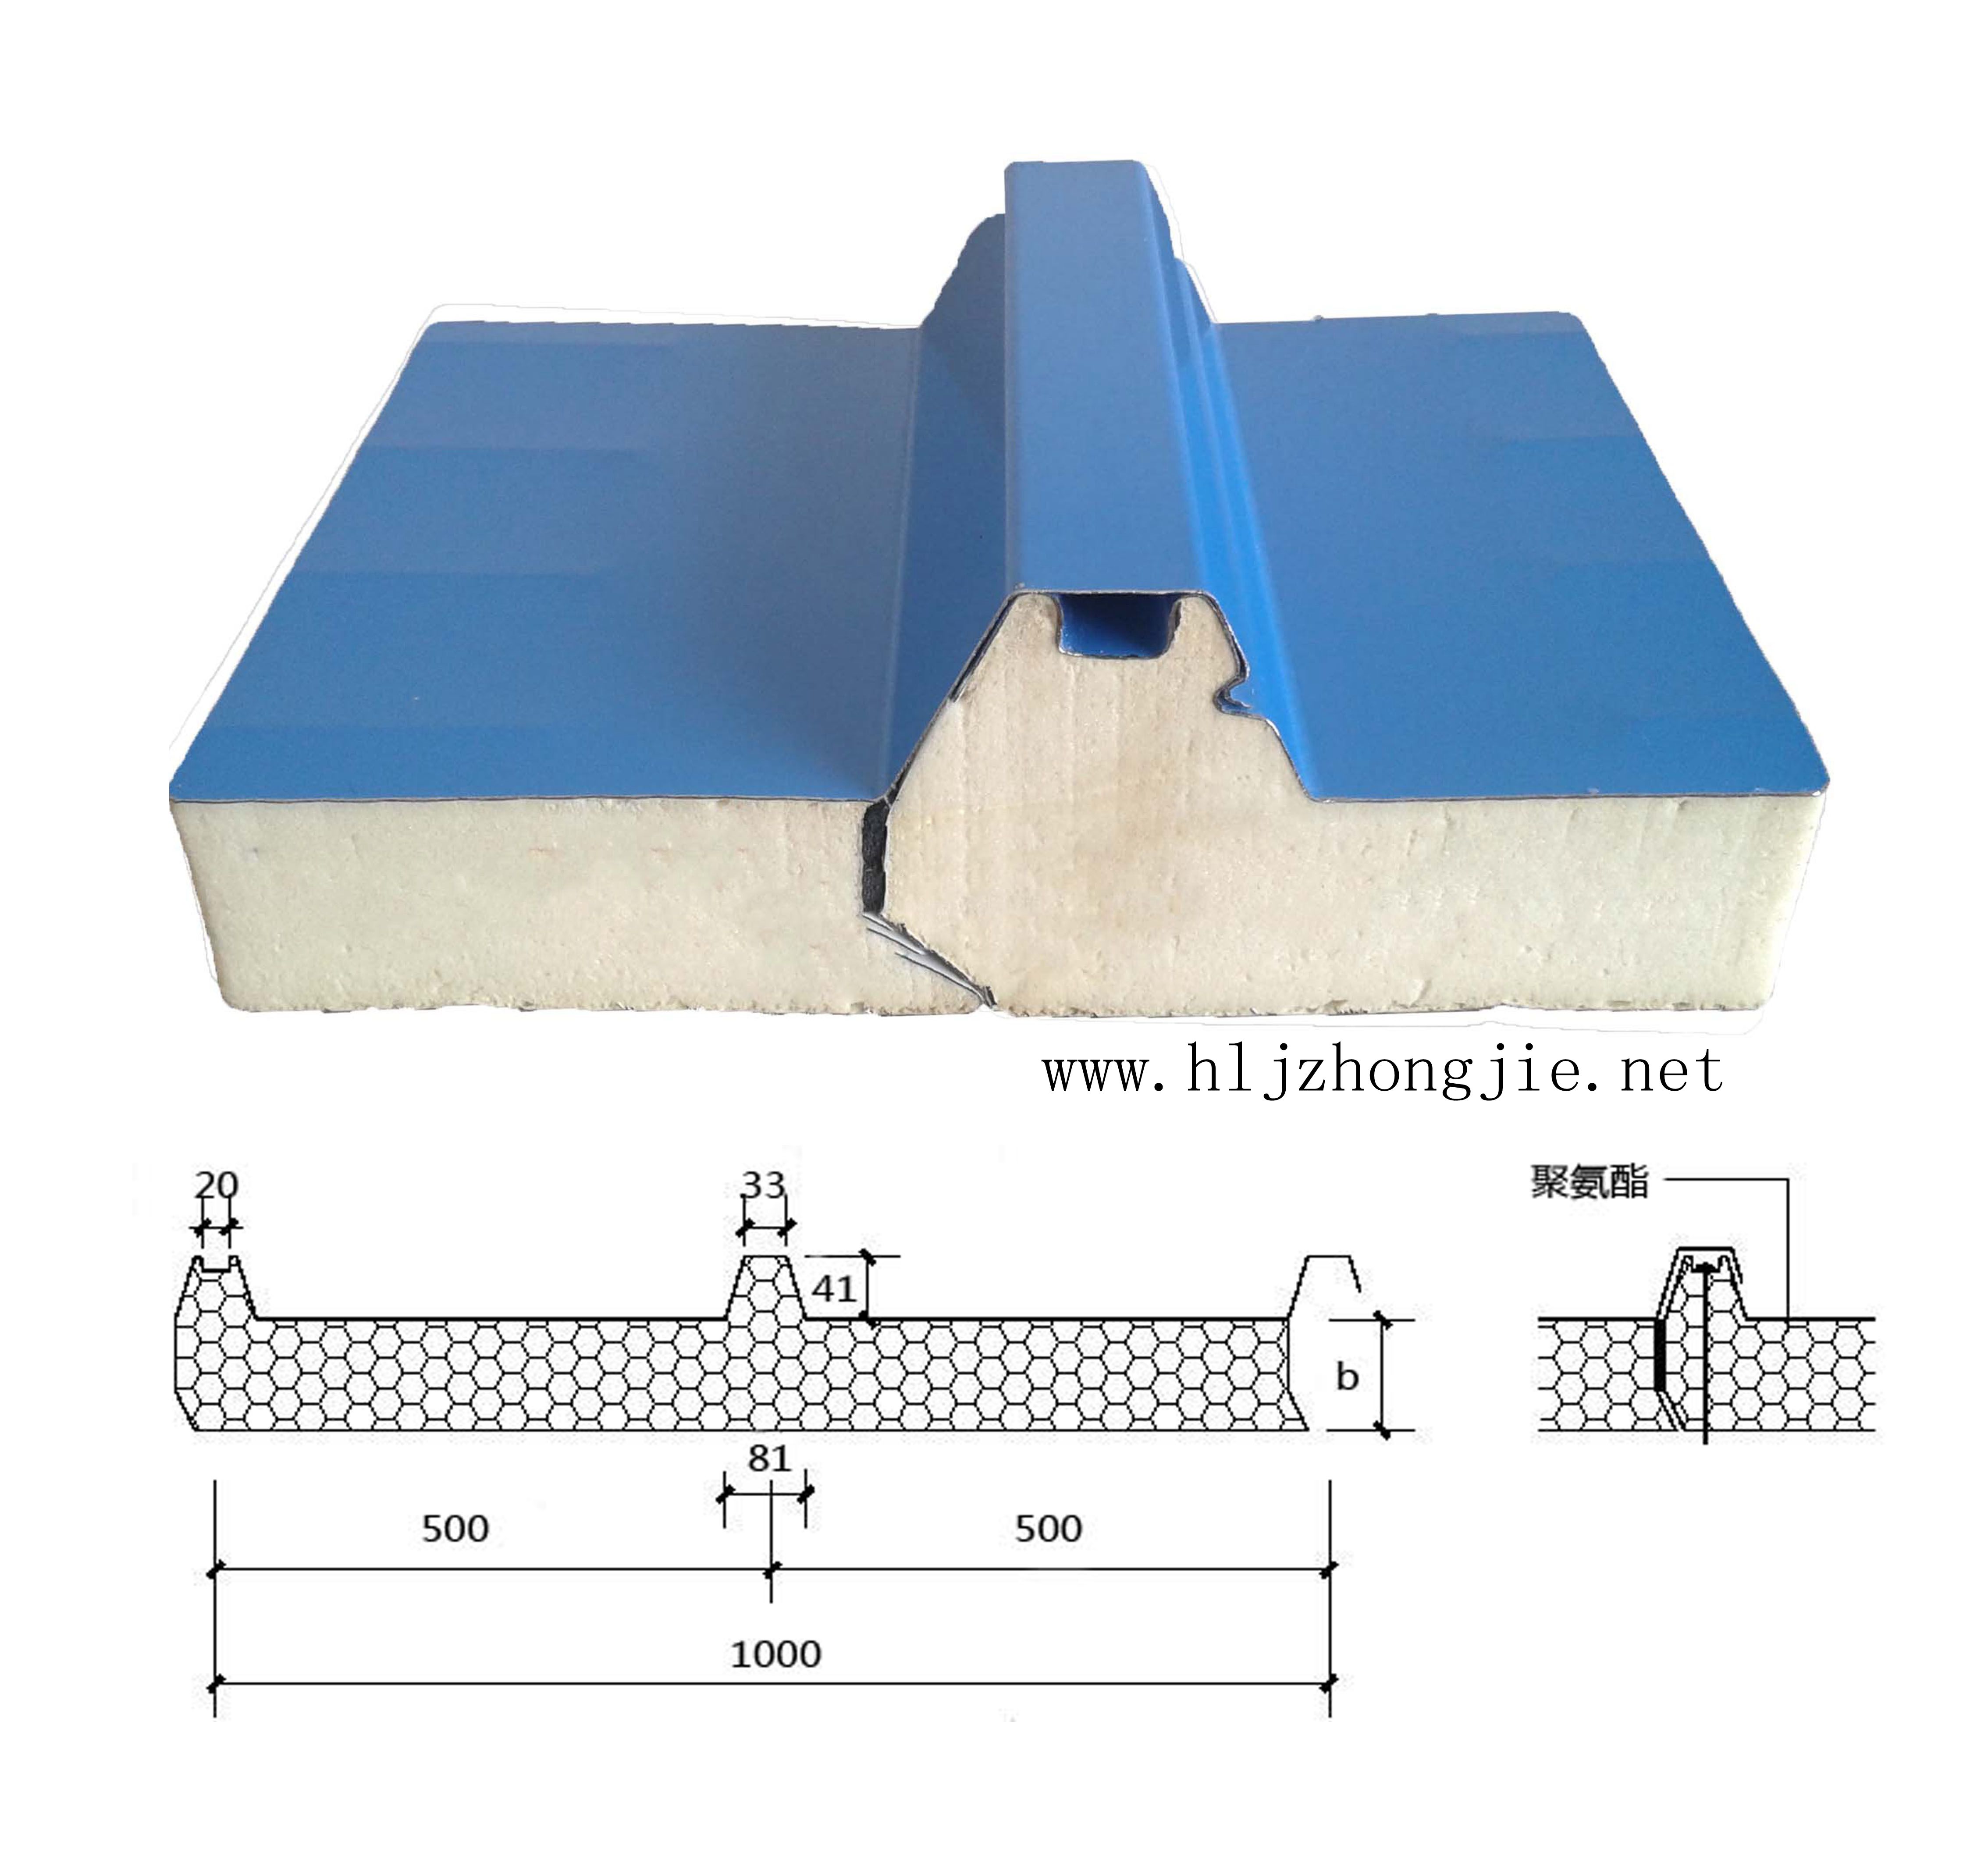 Polyurethane insulation board